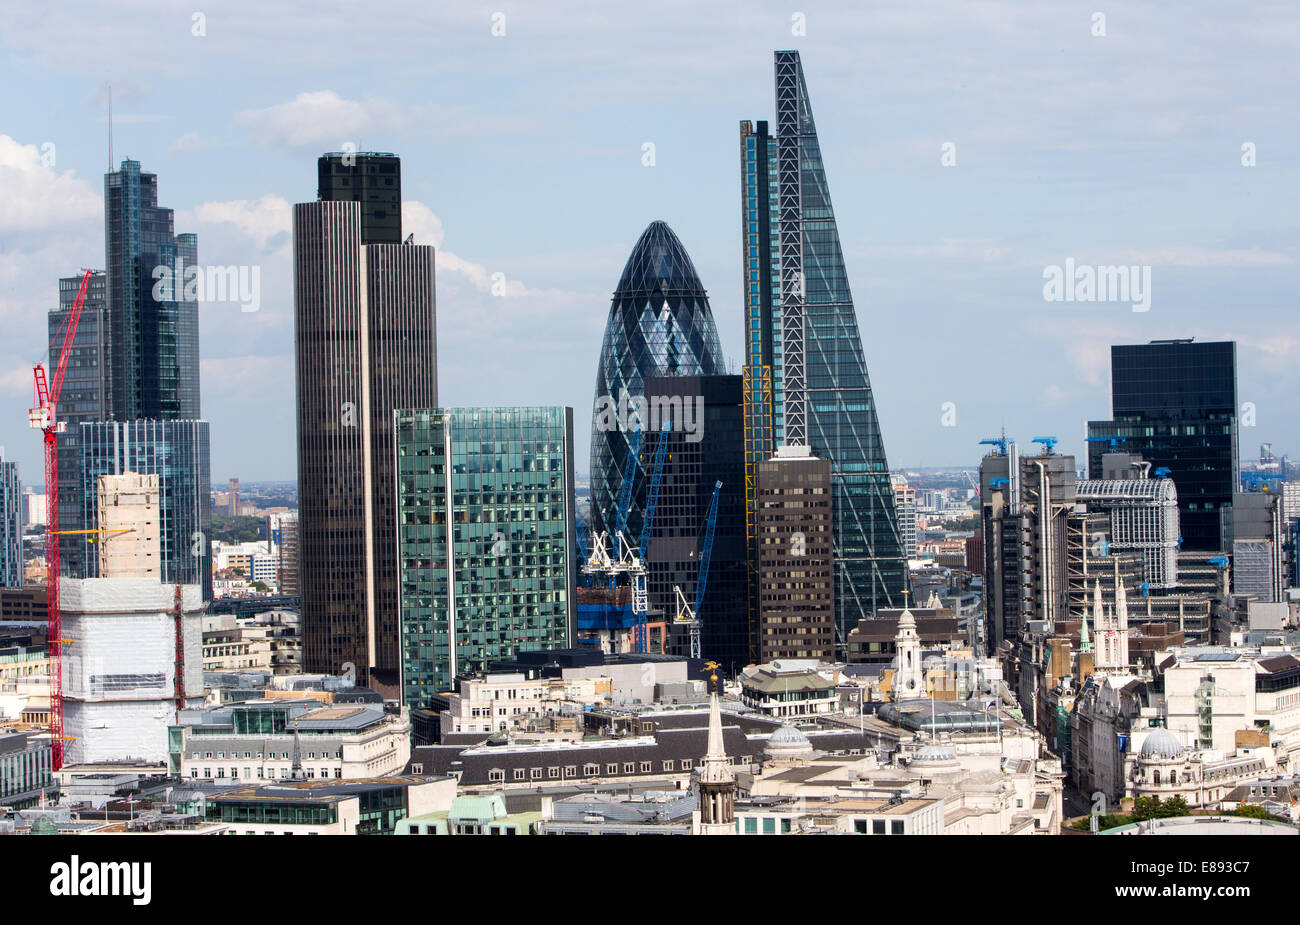 La ville de Londres montrant Tower 42,le Gherkin et l'Cheesegrater Banque D'Images